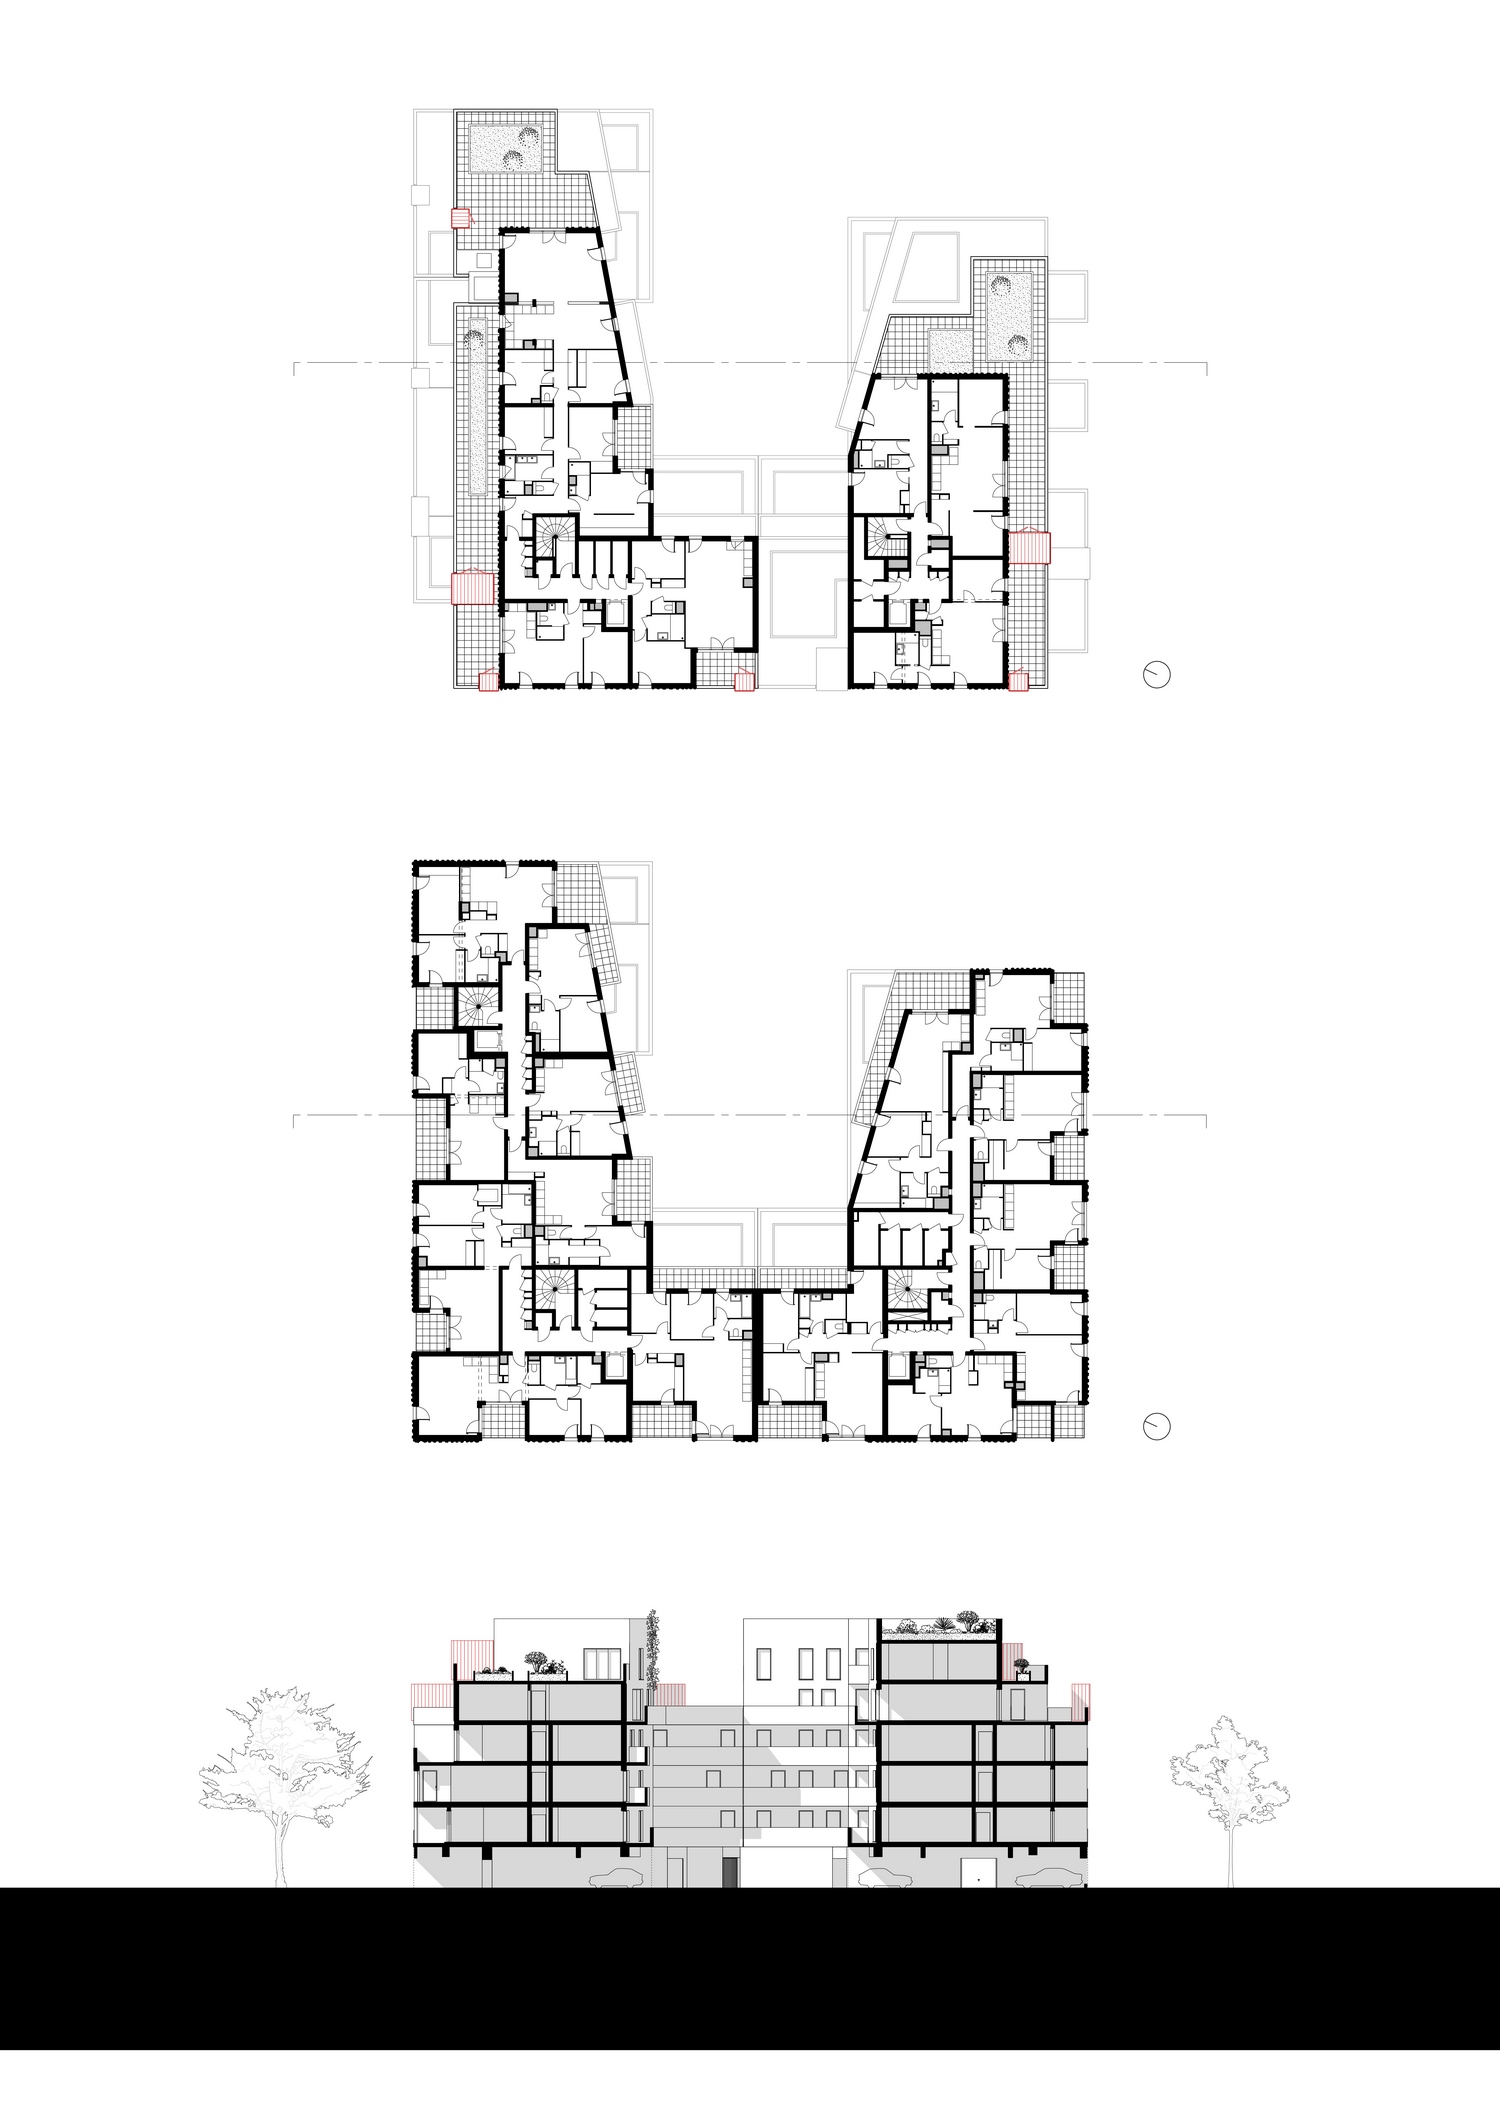 patey architectes - construction de 61 logements “les ateliers 130” dans la nouvelle zac vetrotex à chambéry - savoie